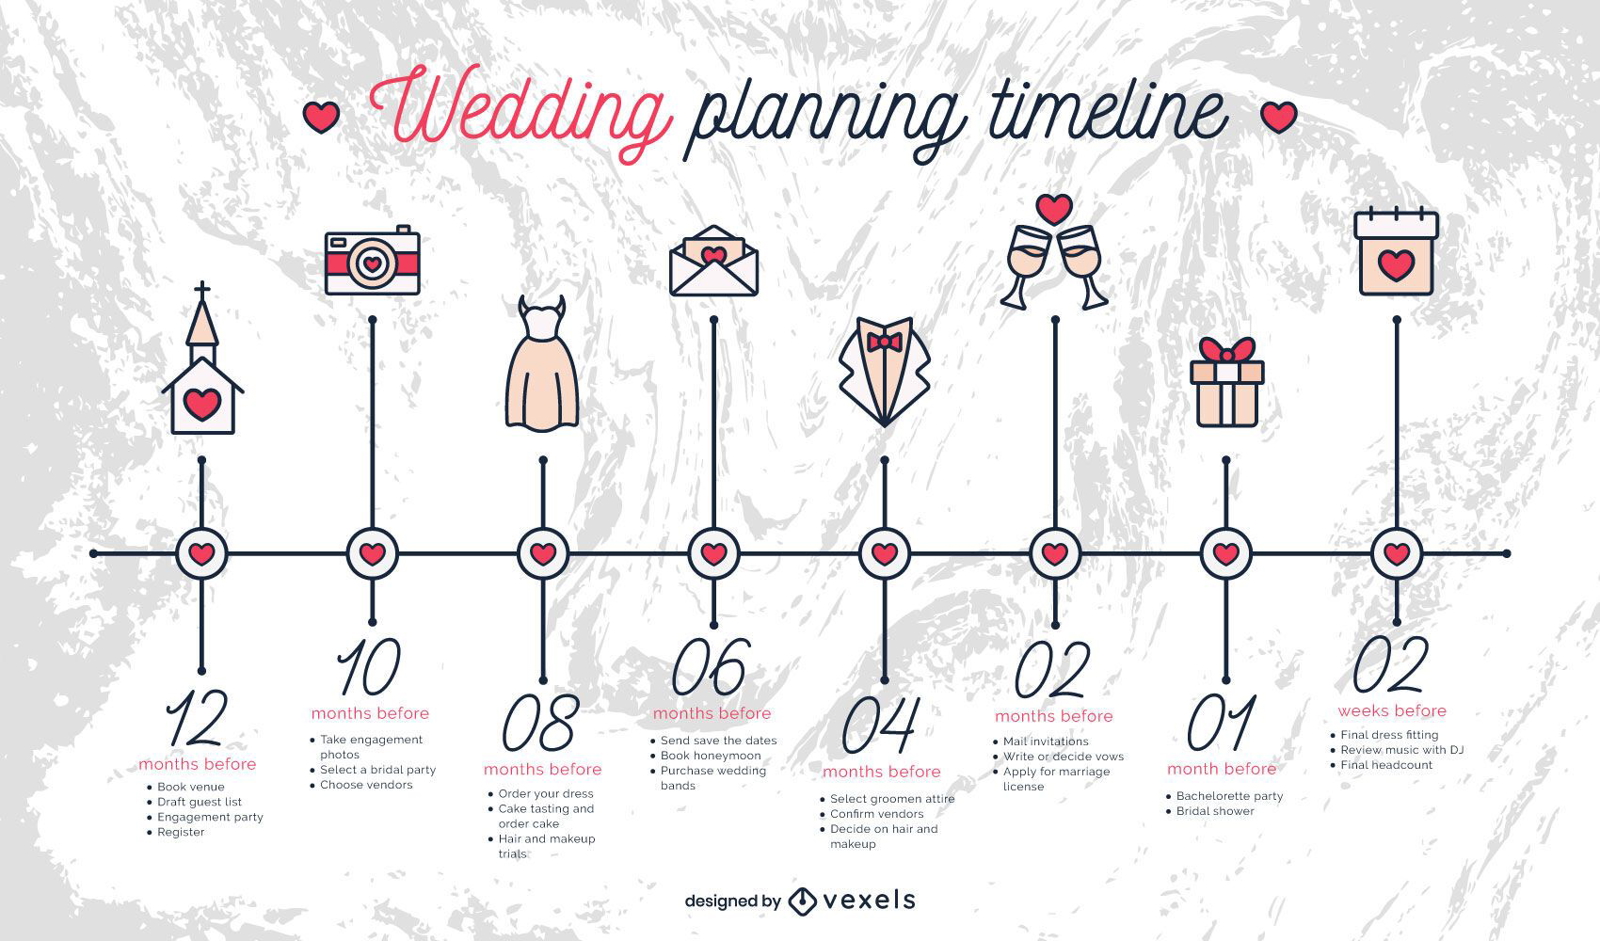 Cronograma de planejamento de casamento